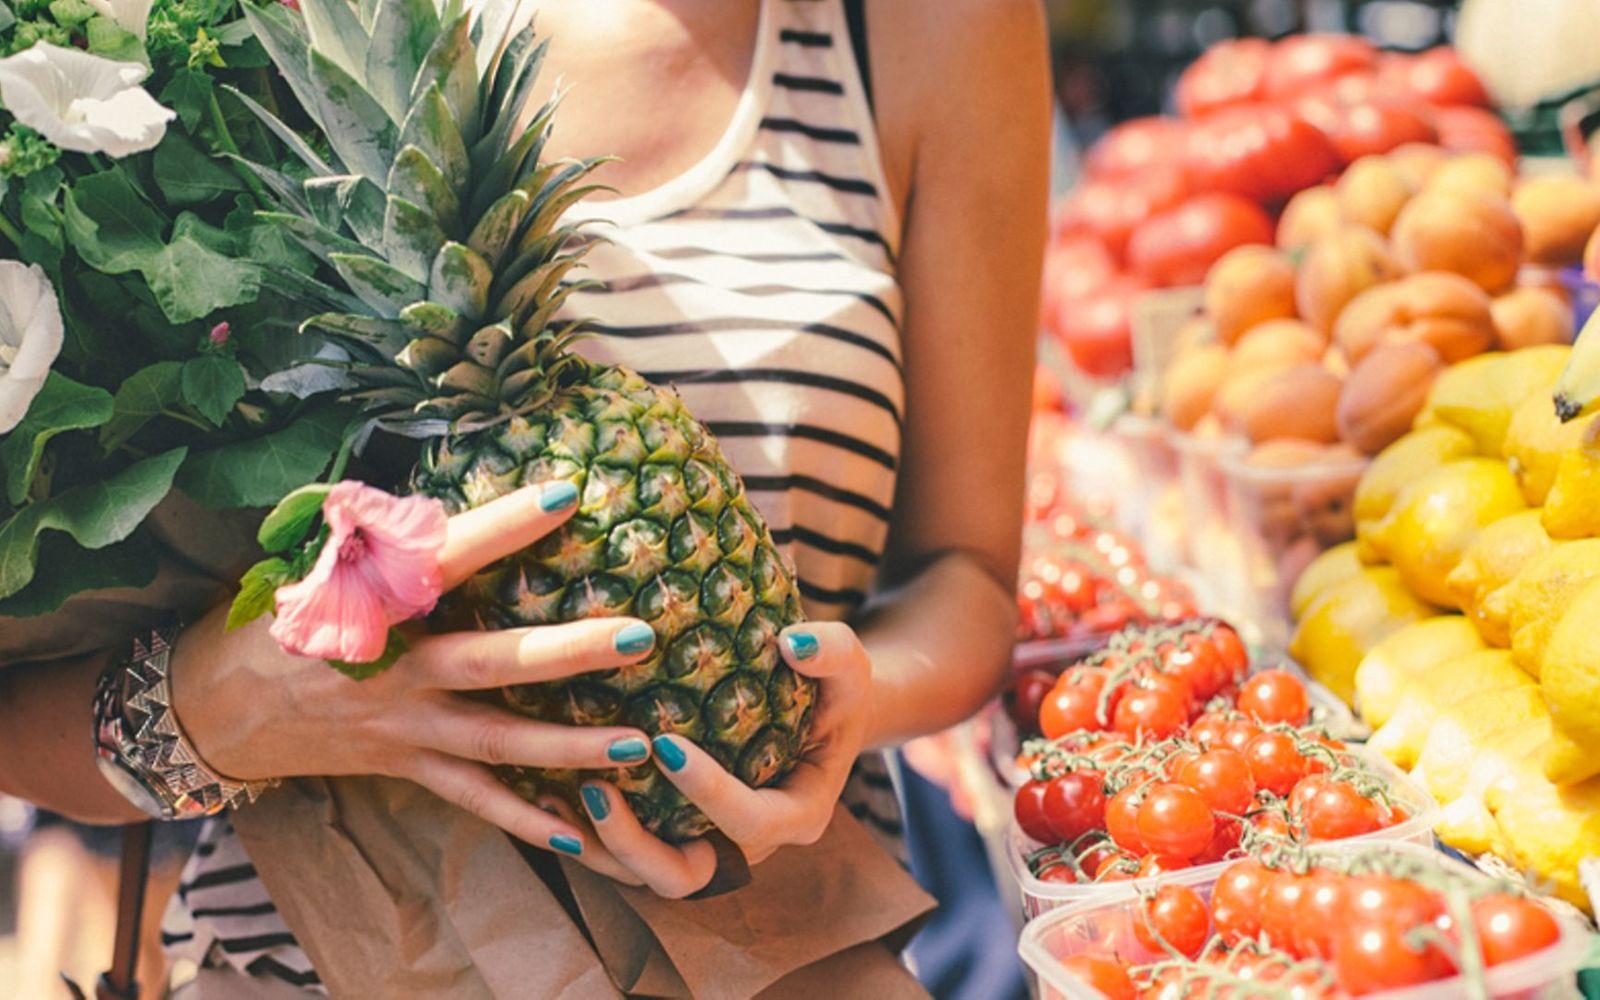 Vegane Ernährung: Frau hat auf einem Wochenmarkt eine Ananas gekauft.